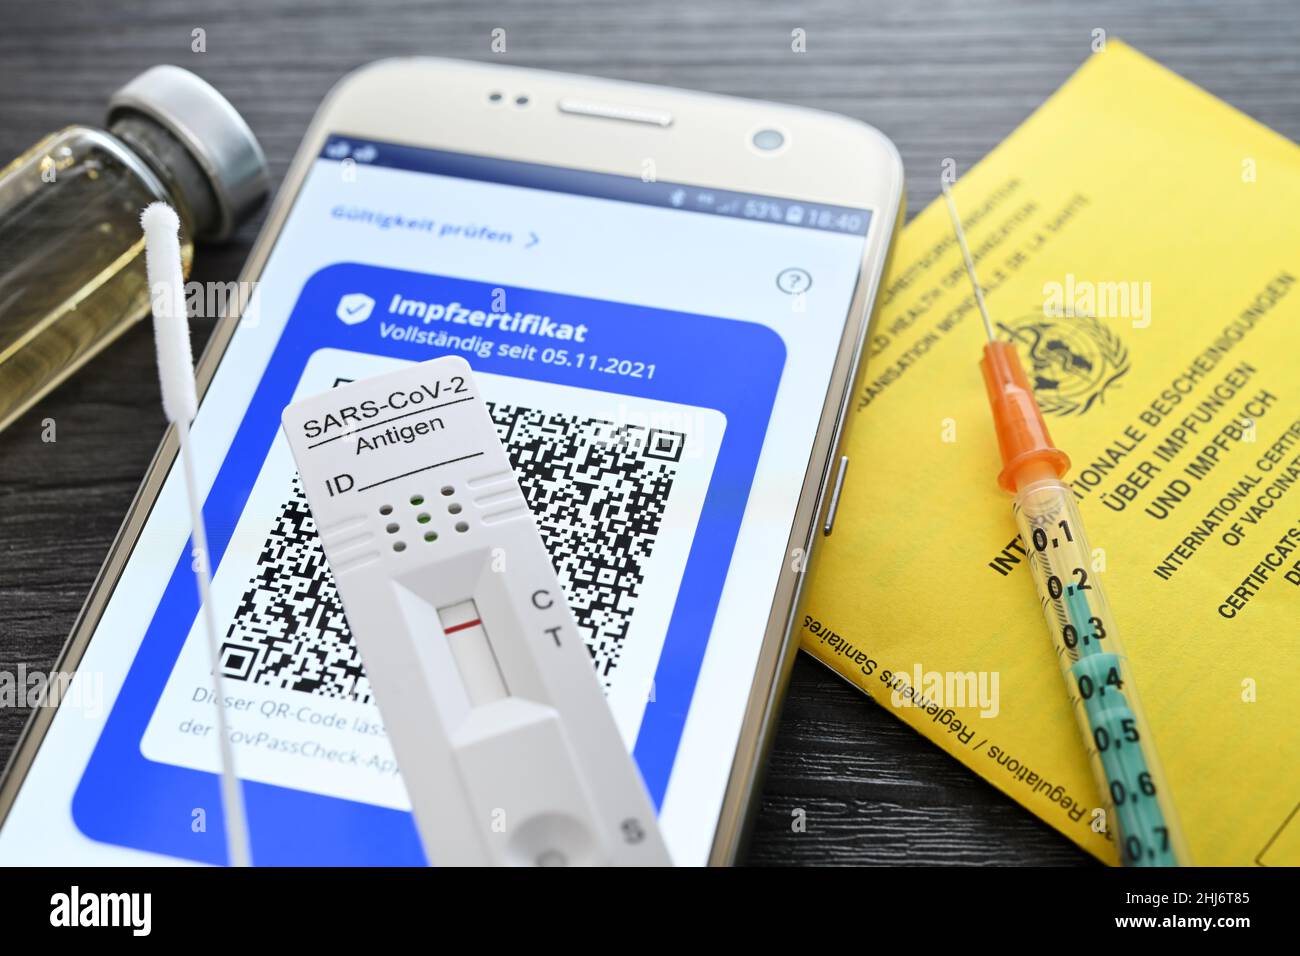 Impfzertifikat auf smartphone mit negativem Corona-Schnelltest, Impfausweis und Impfspritze, Symbolfoto digitaler Impfnachweis und 2G+-Regel Foto Stock